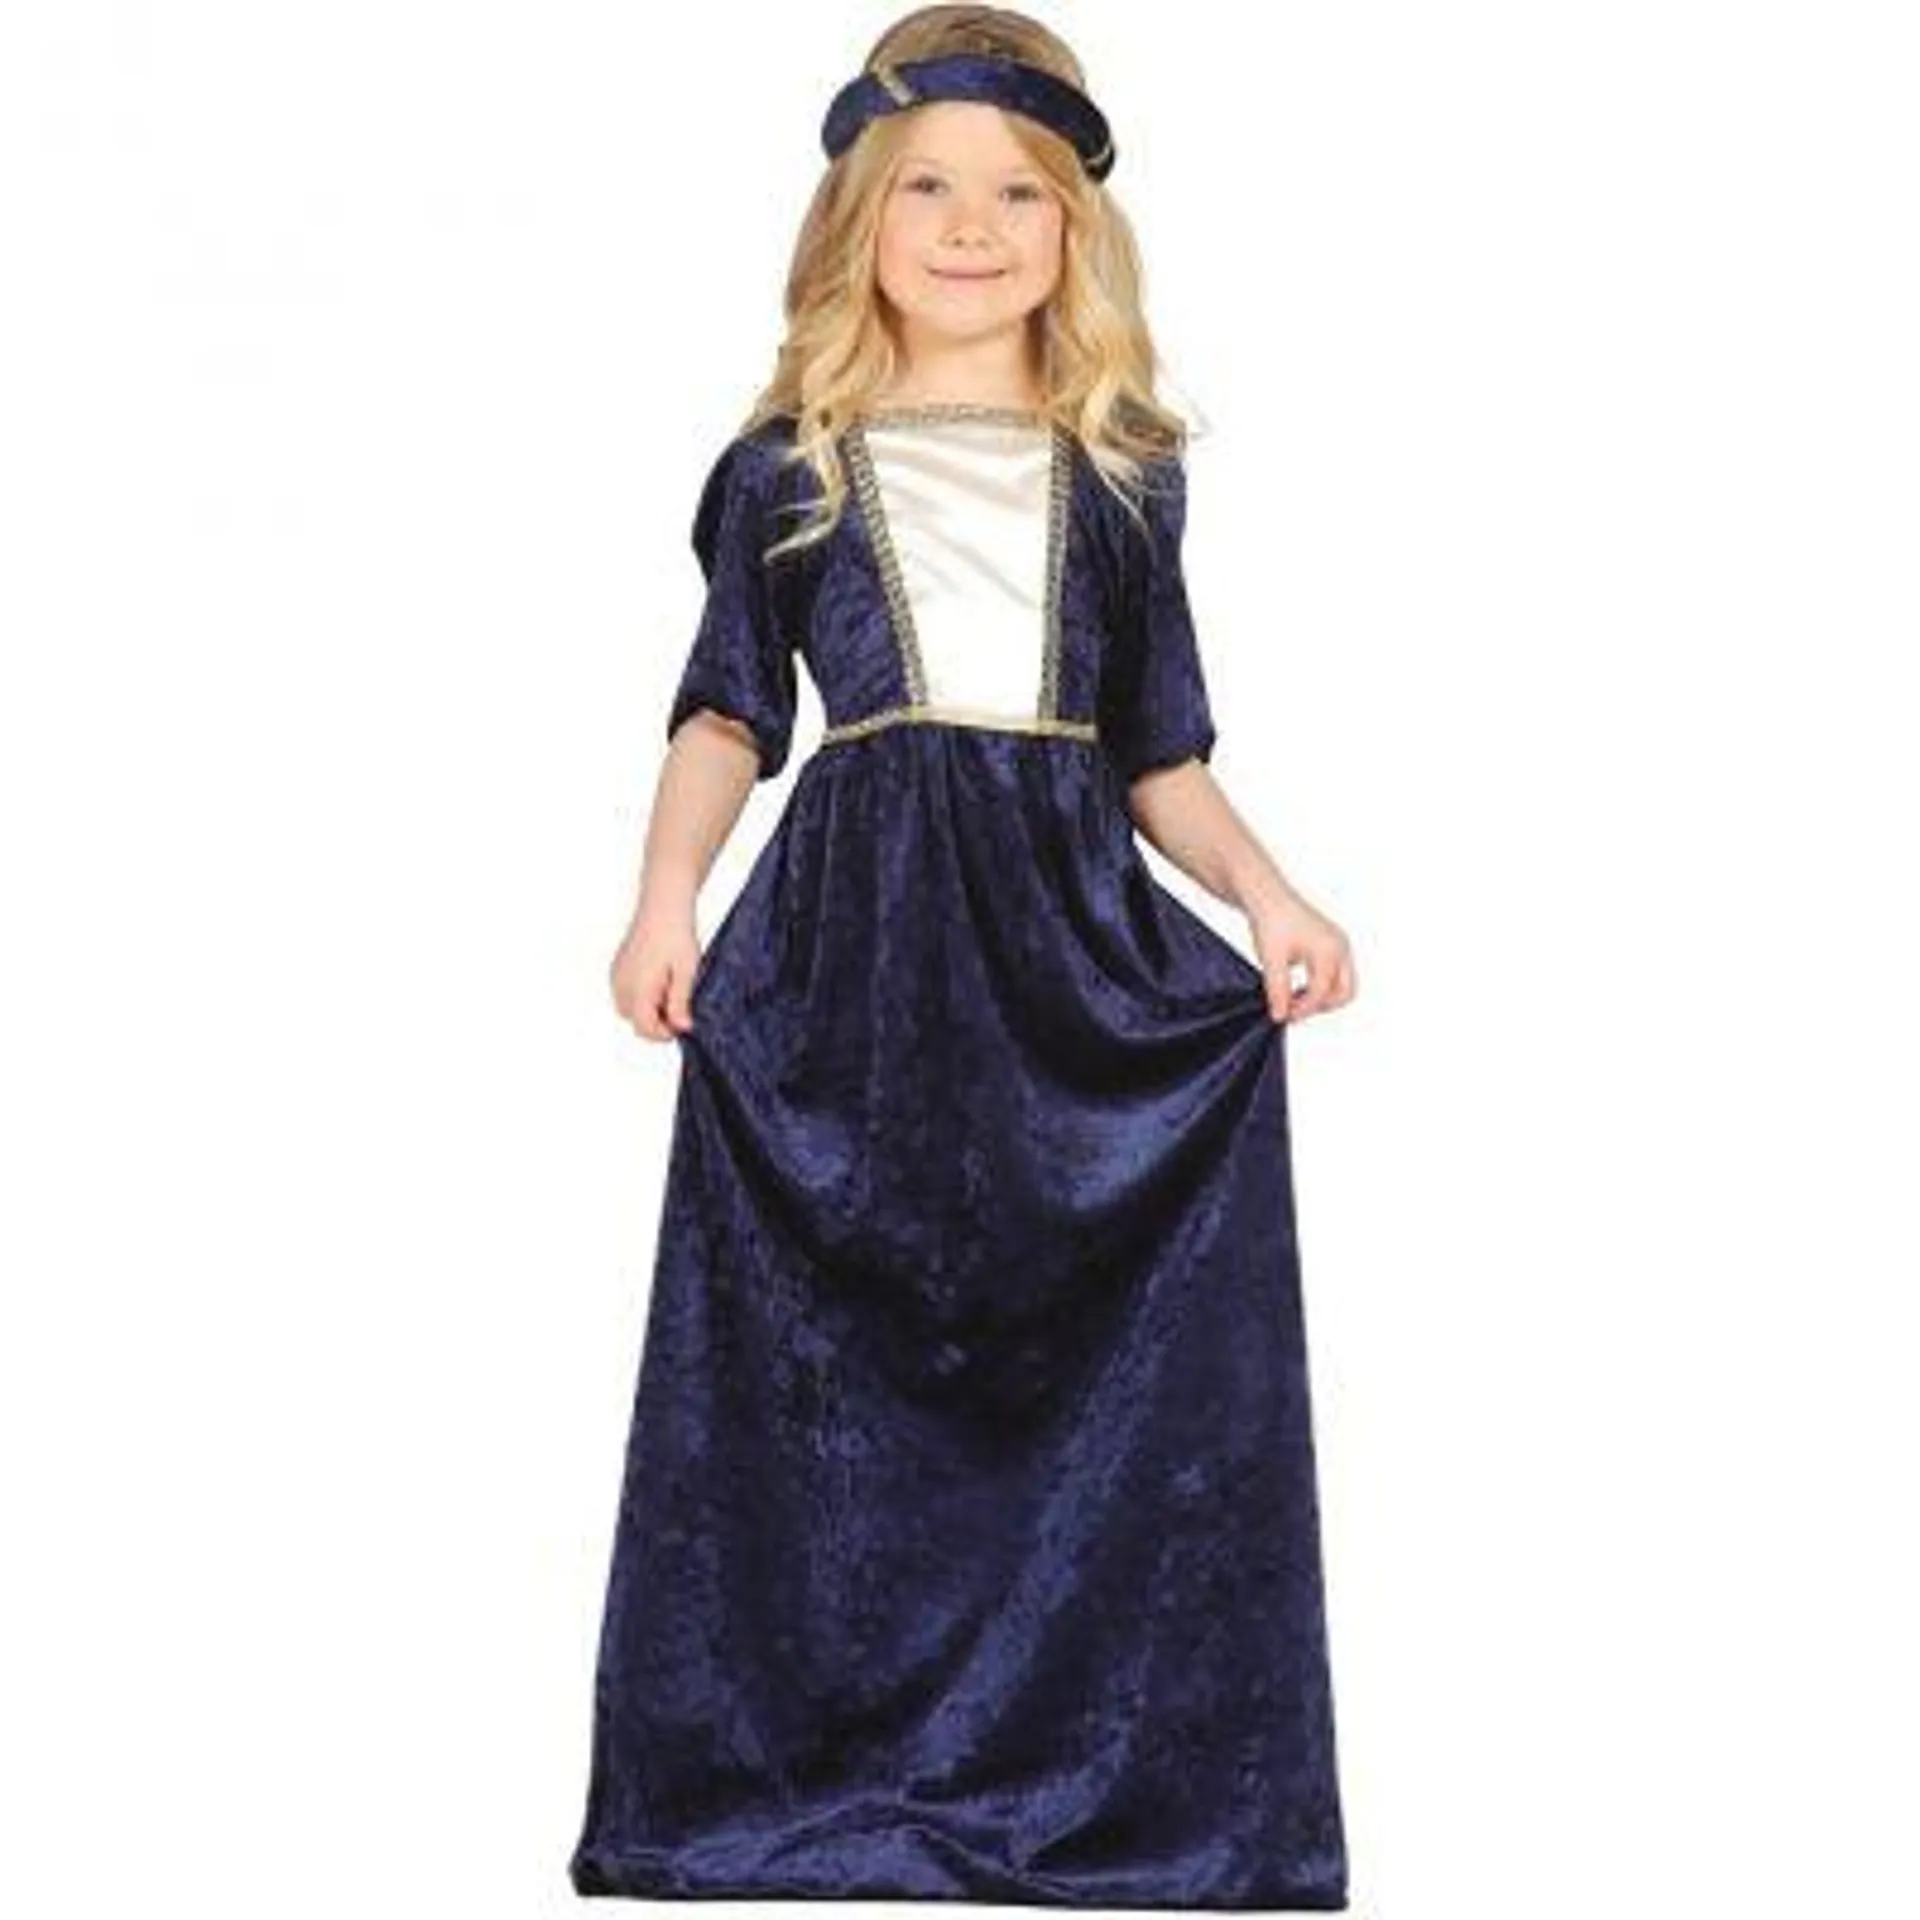 Costume Dame Médiévale Bleu Fille - Taille au Choix